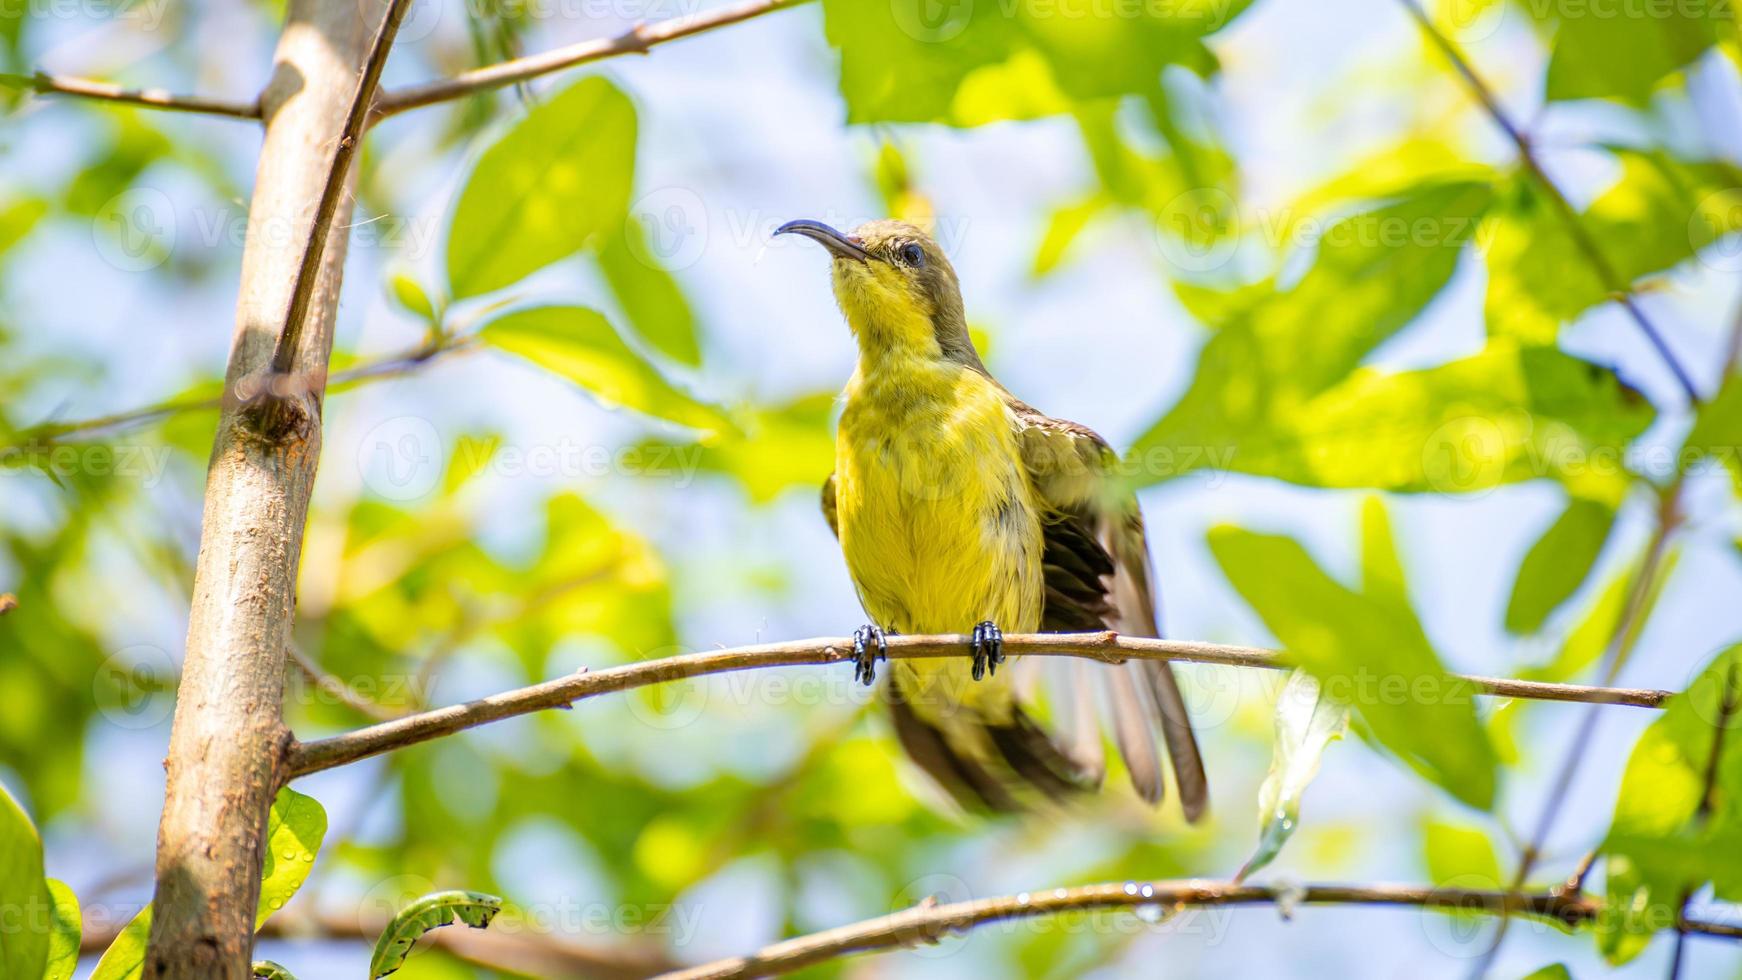 olivbakad solfågel, gulbuk sunbird uppflugen på träd foto